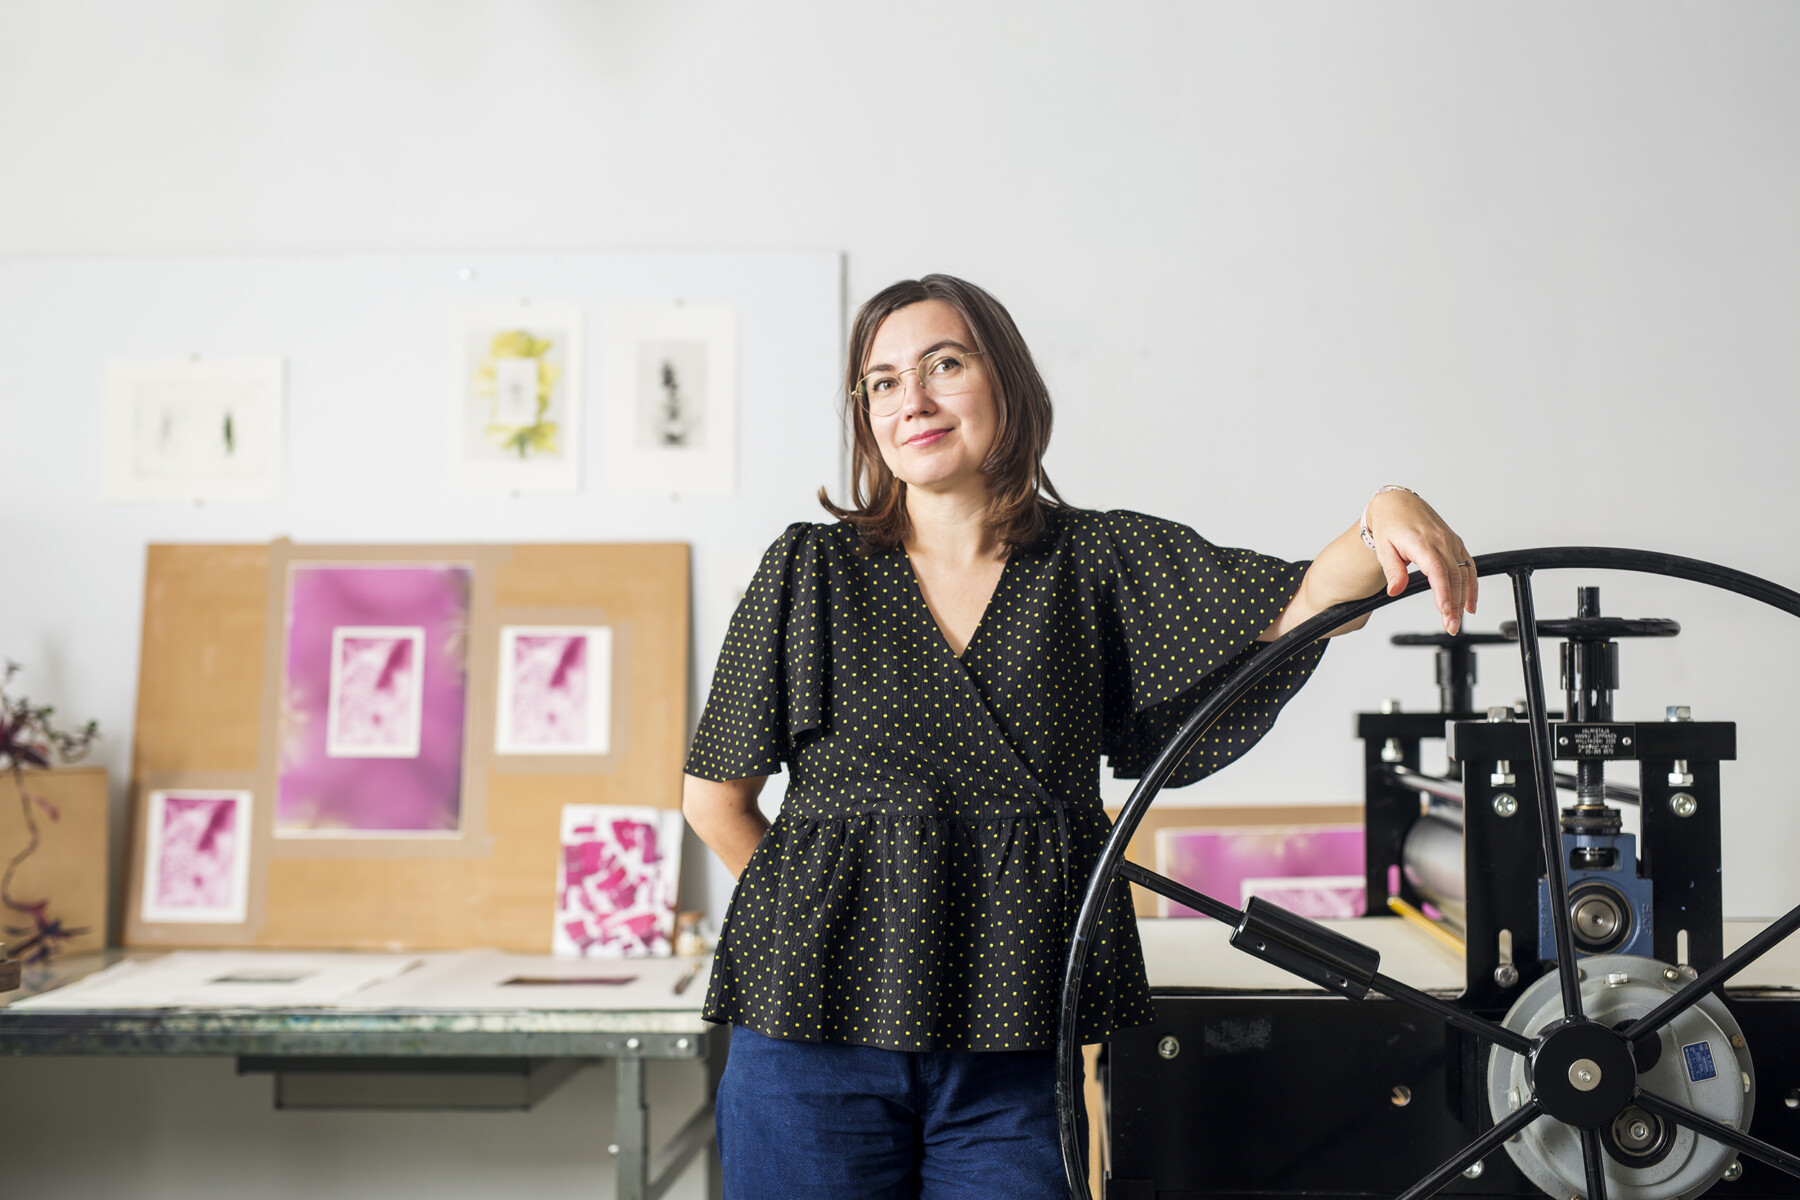 Dans un atelier d’artiste où l’on voit des travaux d’impression accrochés au mur, une femme se tient debout avec un bras posé sur la manivelle d'une presse à imprimer à l'ancienne. 